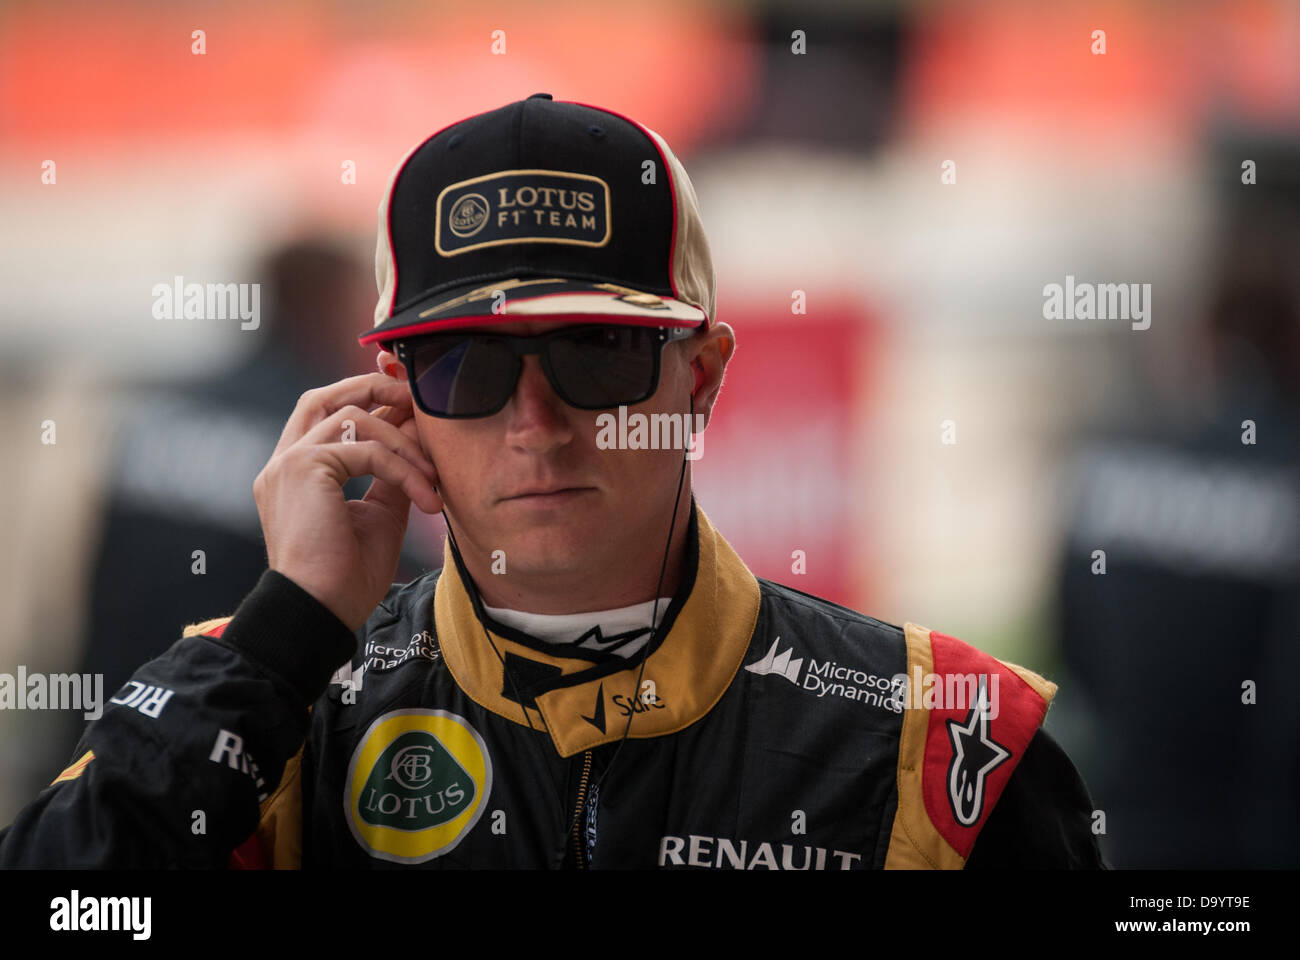 Kimi Raikkonen en el británico de Fórmula Uno (F1), el Grand Prix de Silverstone, en el REINO UNIDO Foto de stock